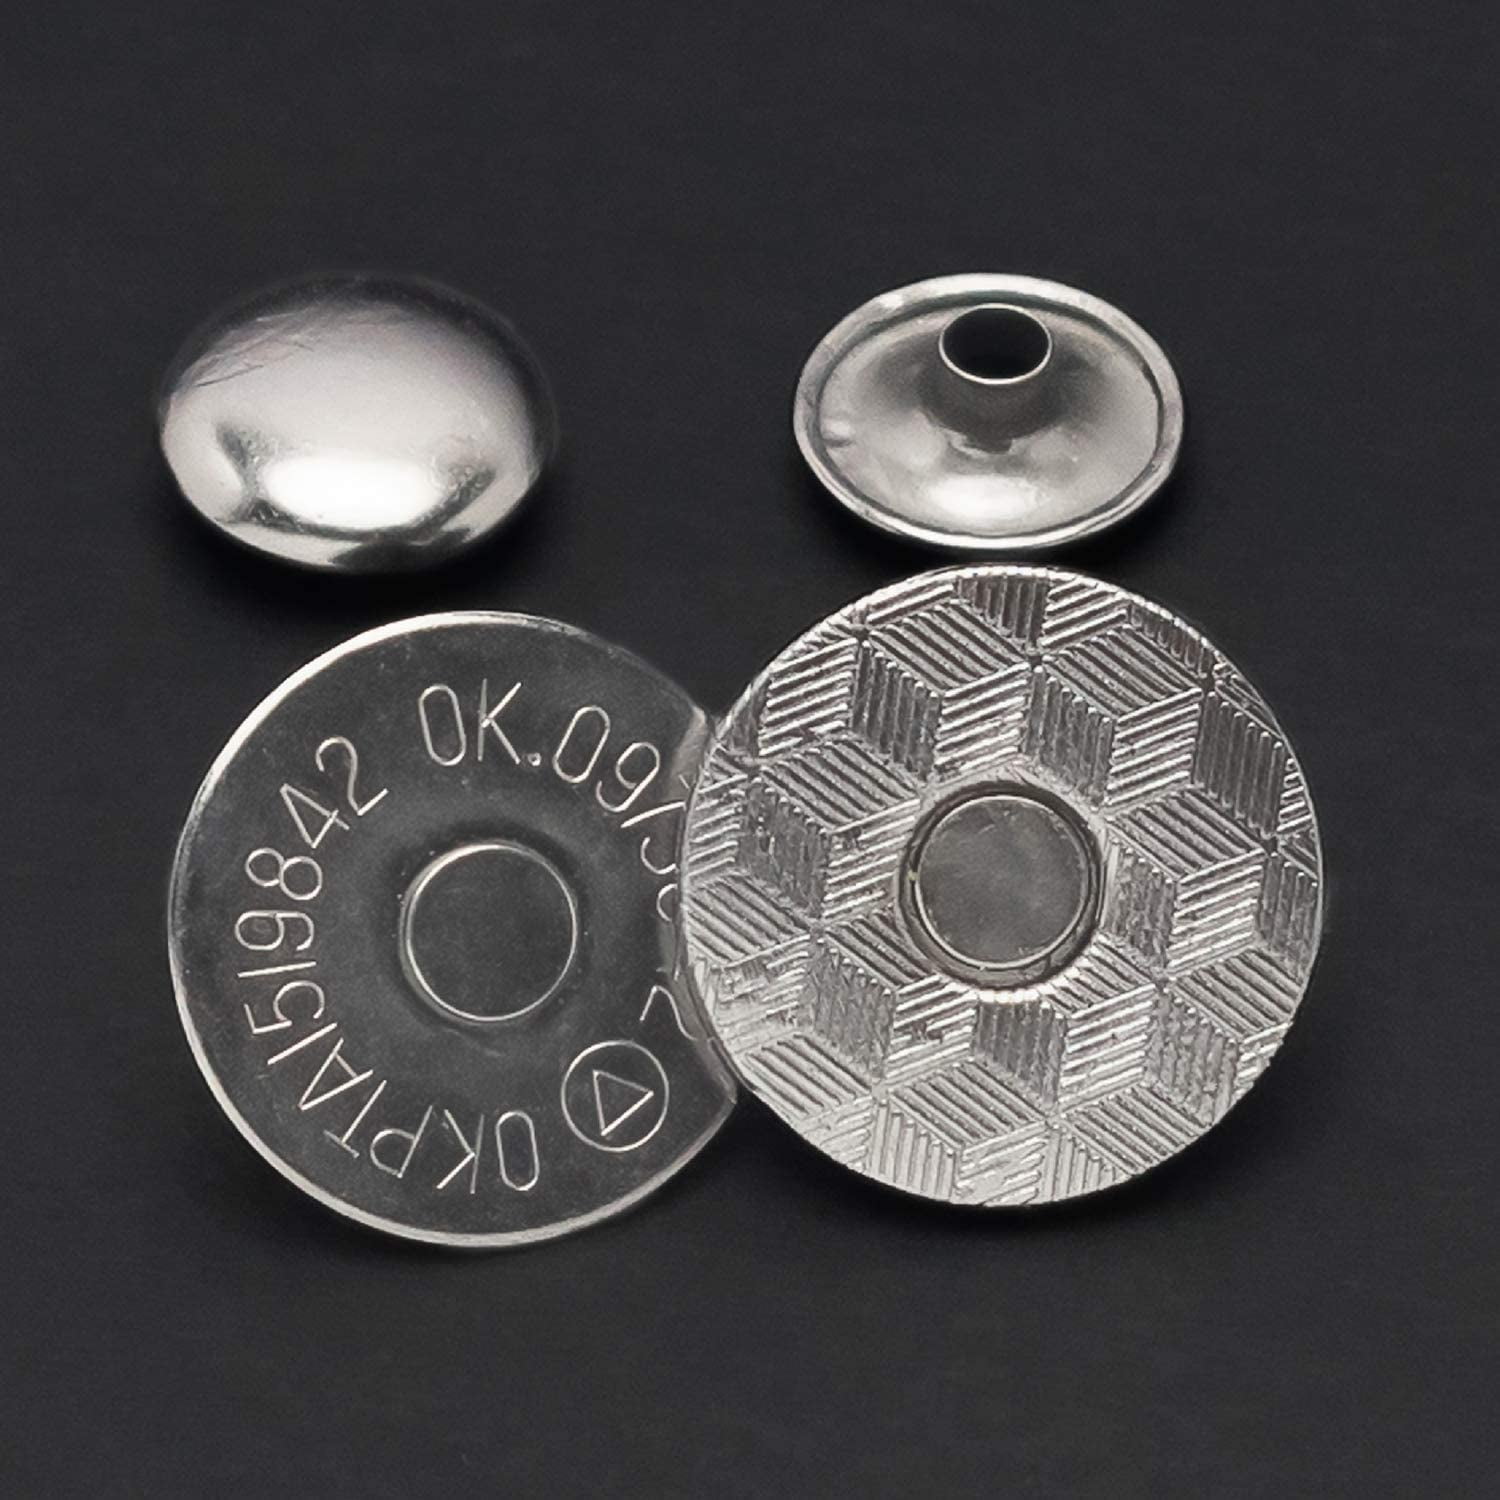 Trimming Shop Magnetic Clasp Snap Fastener Button Double Rivet Closures  (14mm, Gunmetal Black, 2pcs)